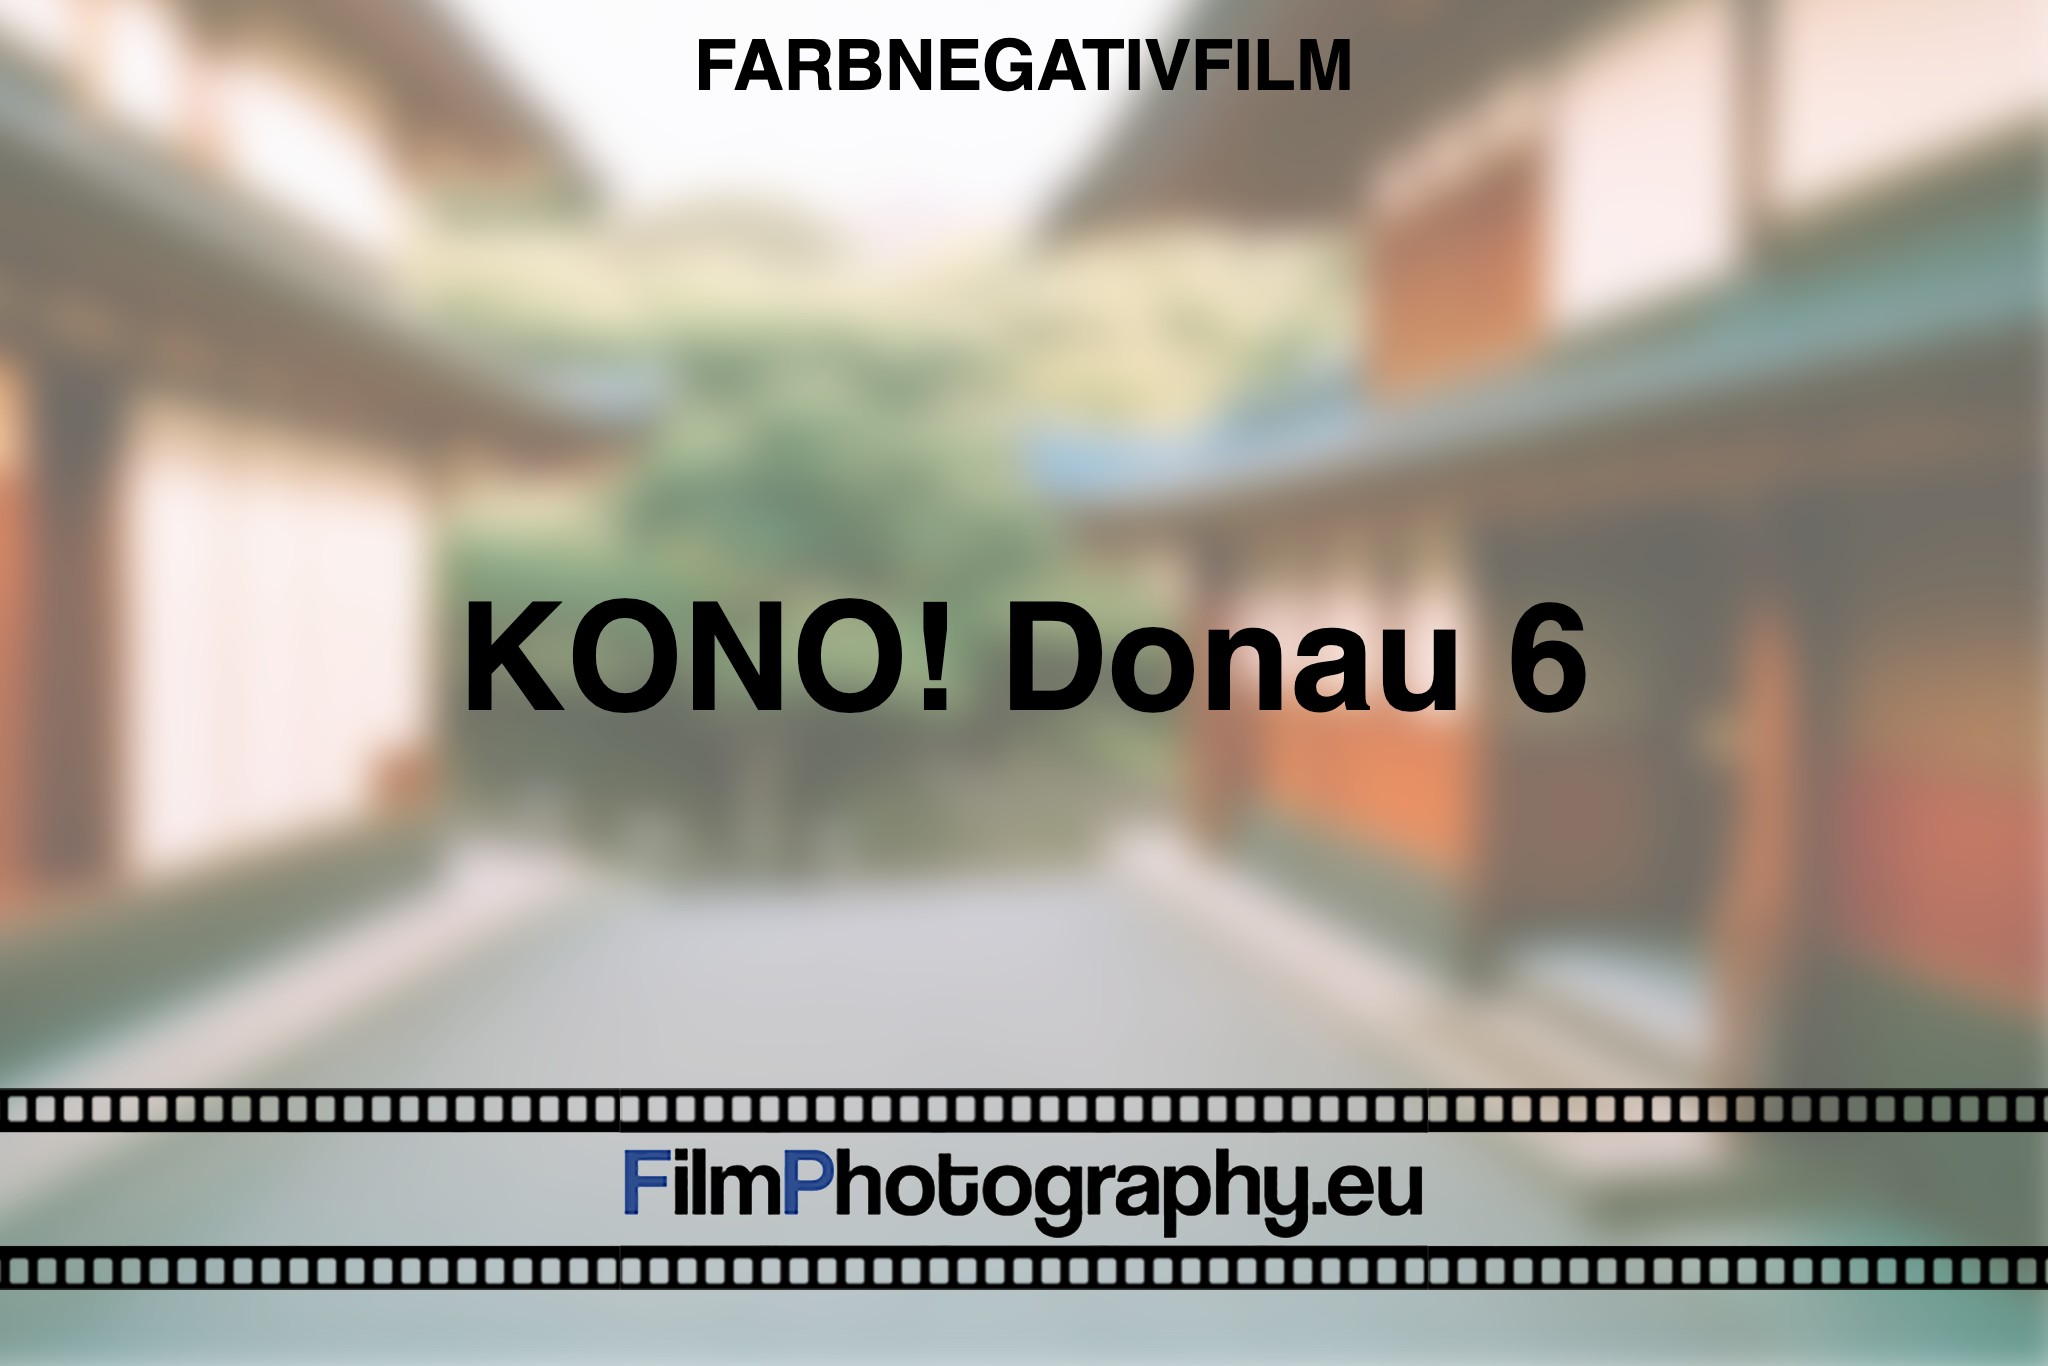 kono-donau-6-farbnegativfilm-bnv